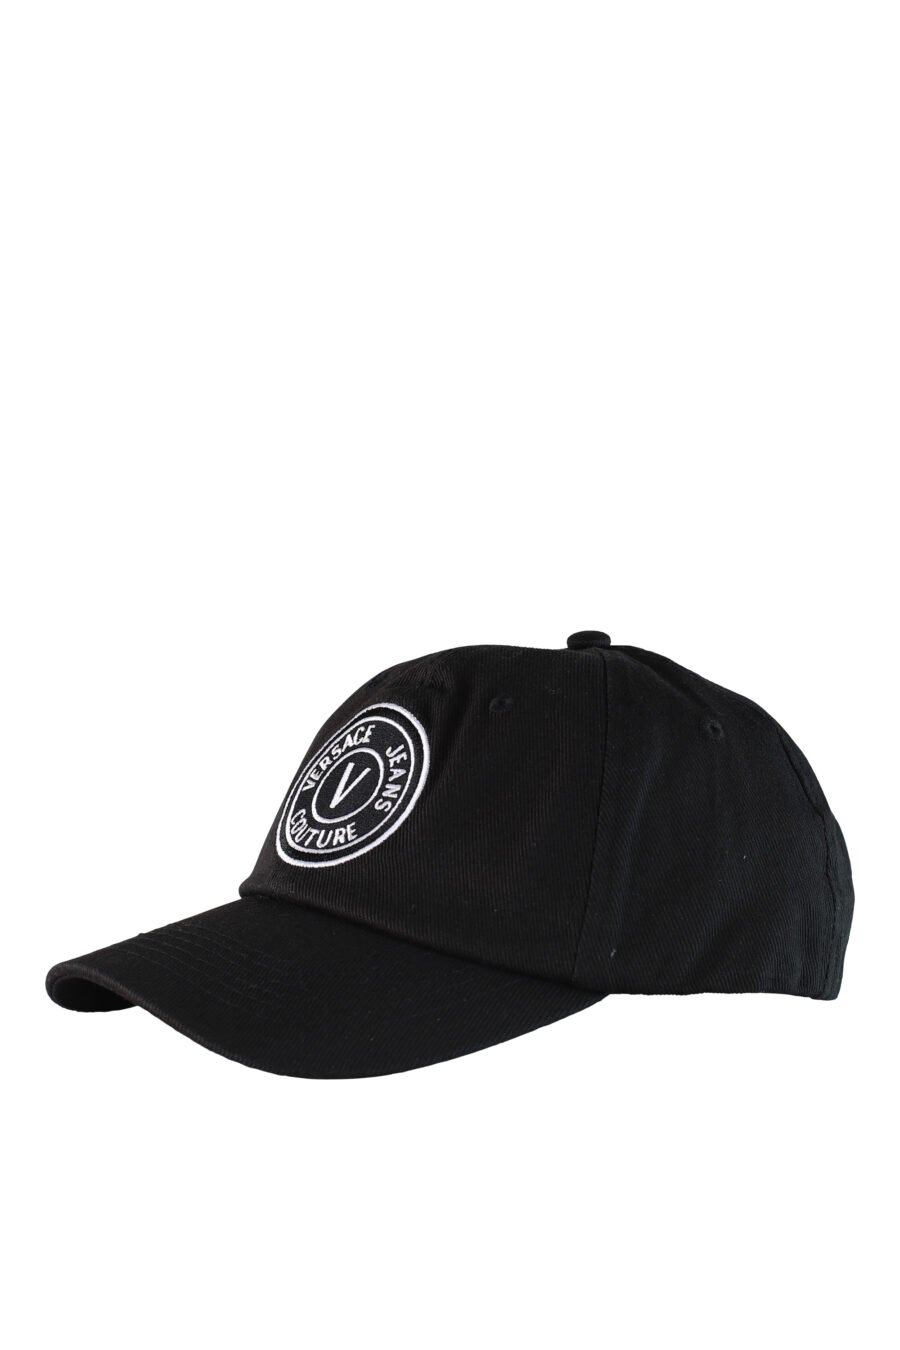 Gorra negra con logo circular blanco - IMG 0506